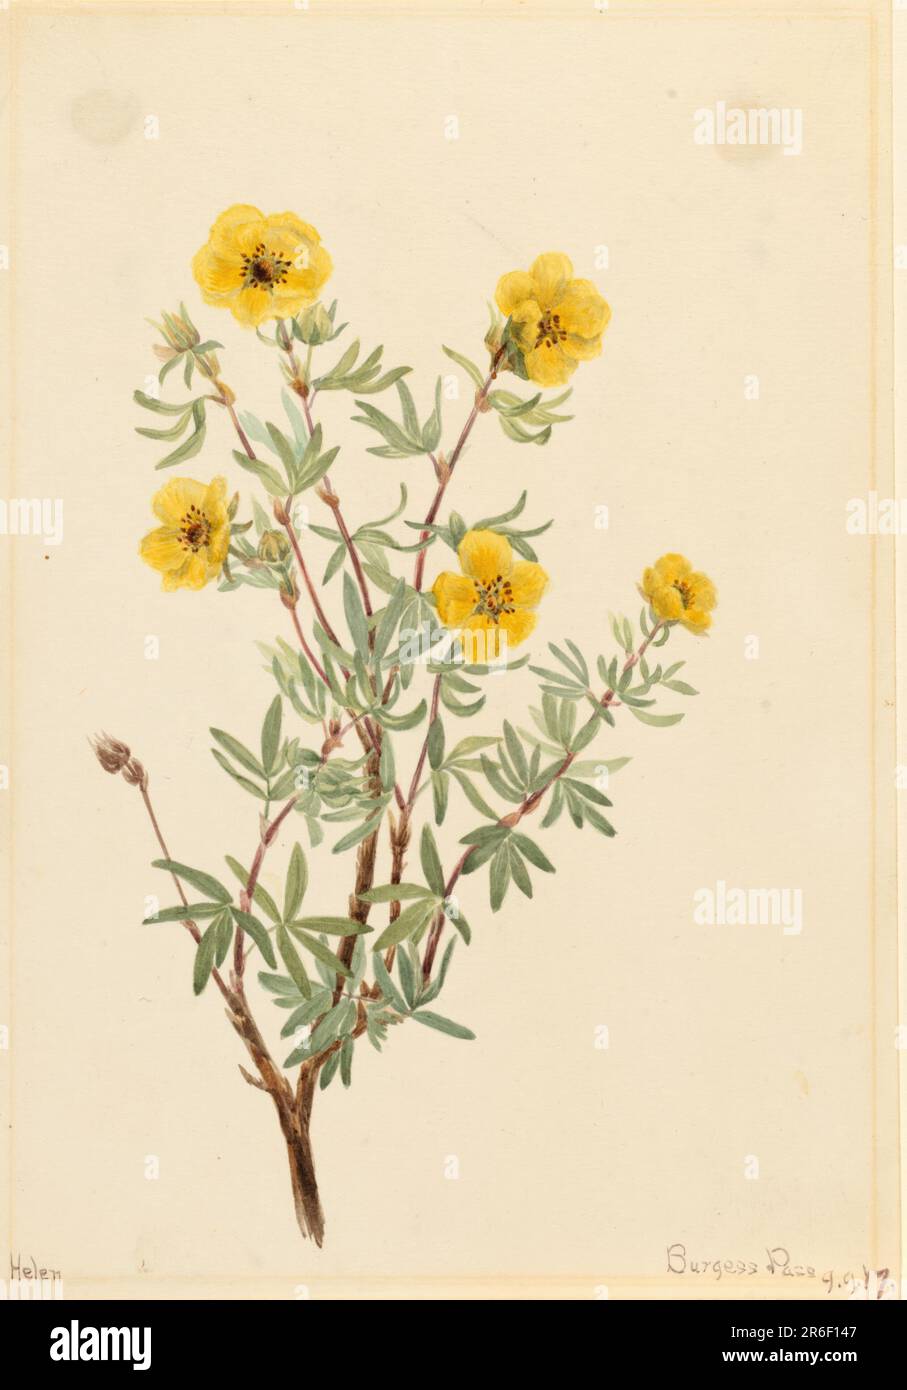 Bush Cinquefoil (Potentilla fruticosa). Date: 1917. Watercolor on paper. Museum: Smithsonian American Art Museum. Stock Photo